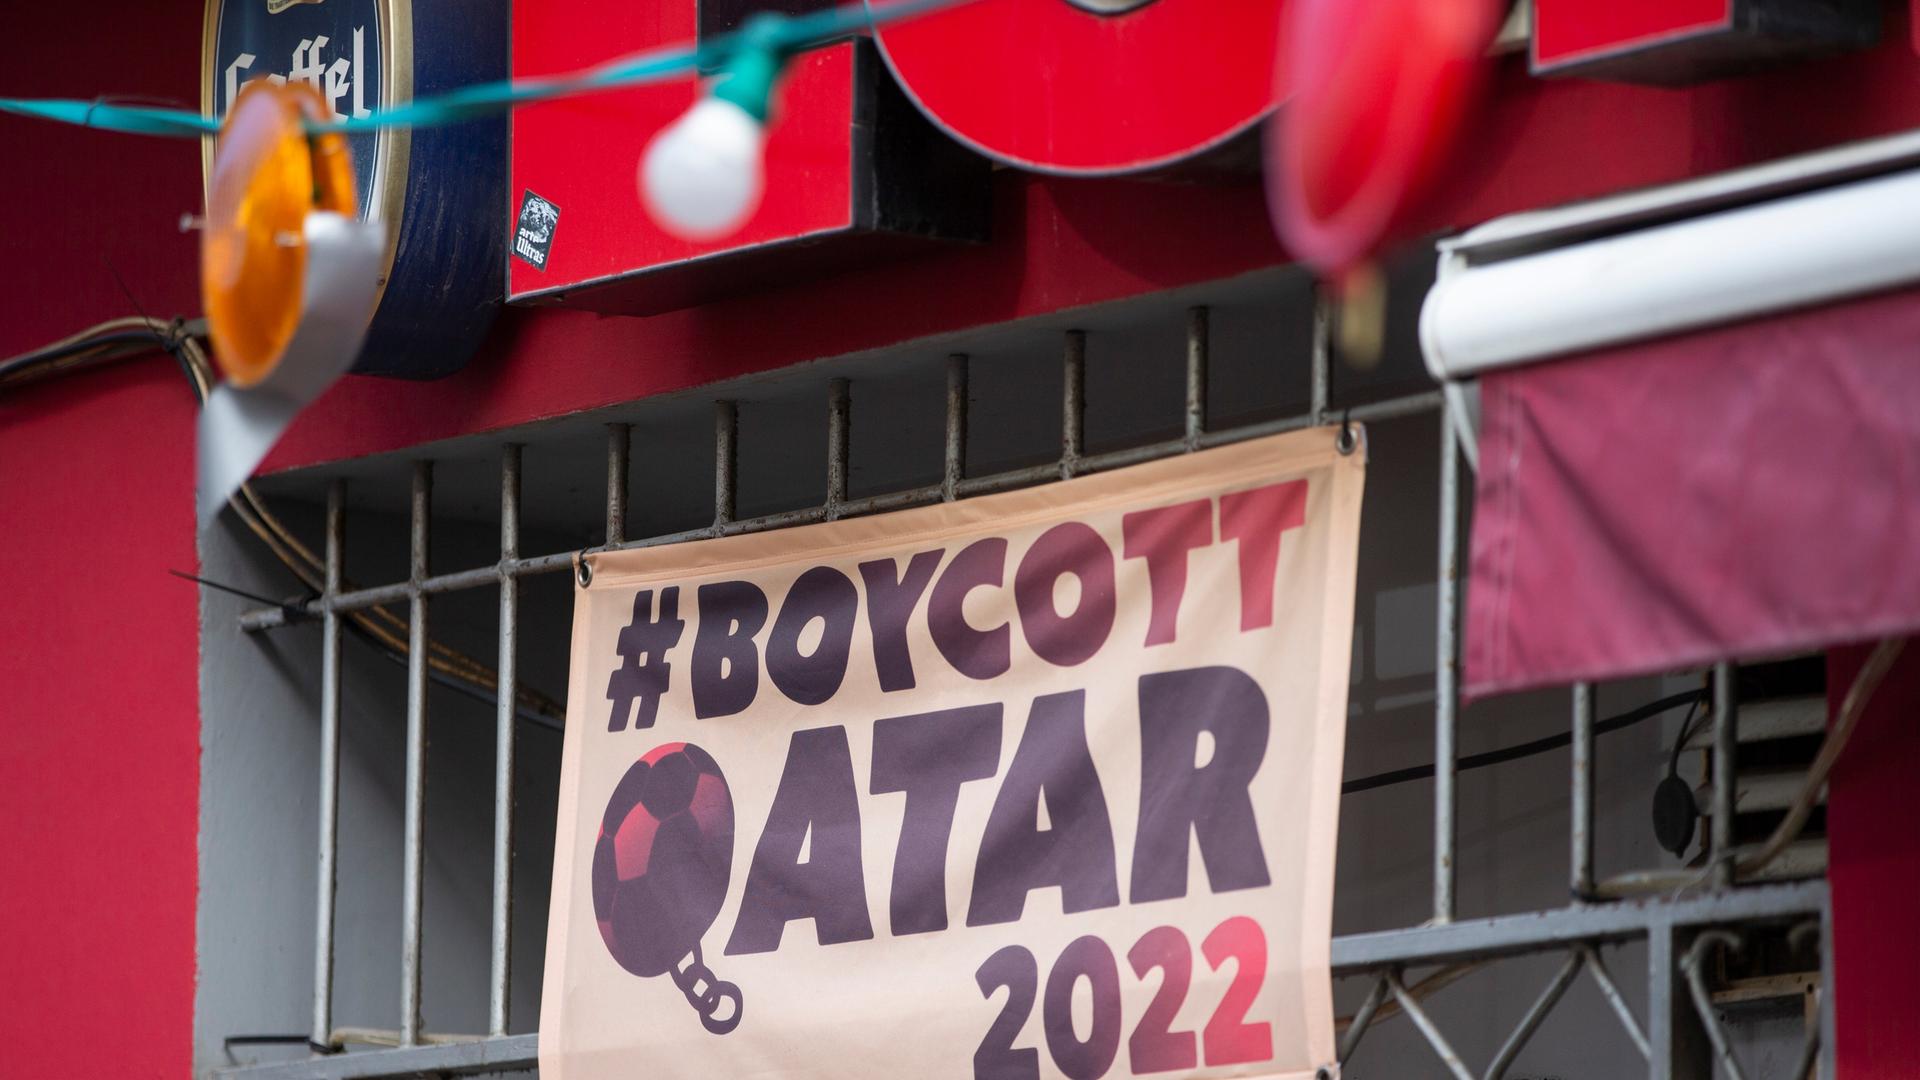 Die Kneipe Lotta in der Kölner Südstadt boykottiert die Fussball WM-Spiele in Katar und hat über dem Eingang ein Banner mit der Aufschrift "#Boycott Qatar 2022" aufgehängt.